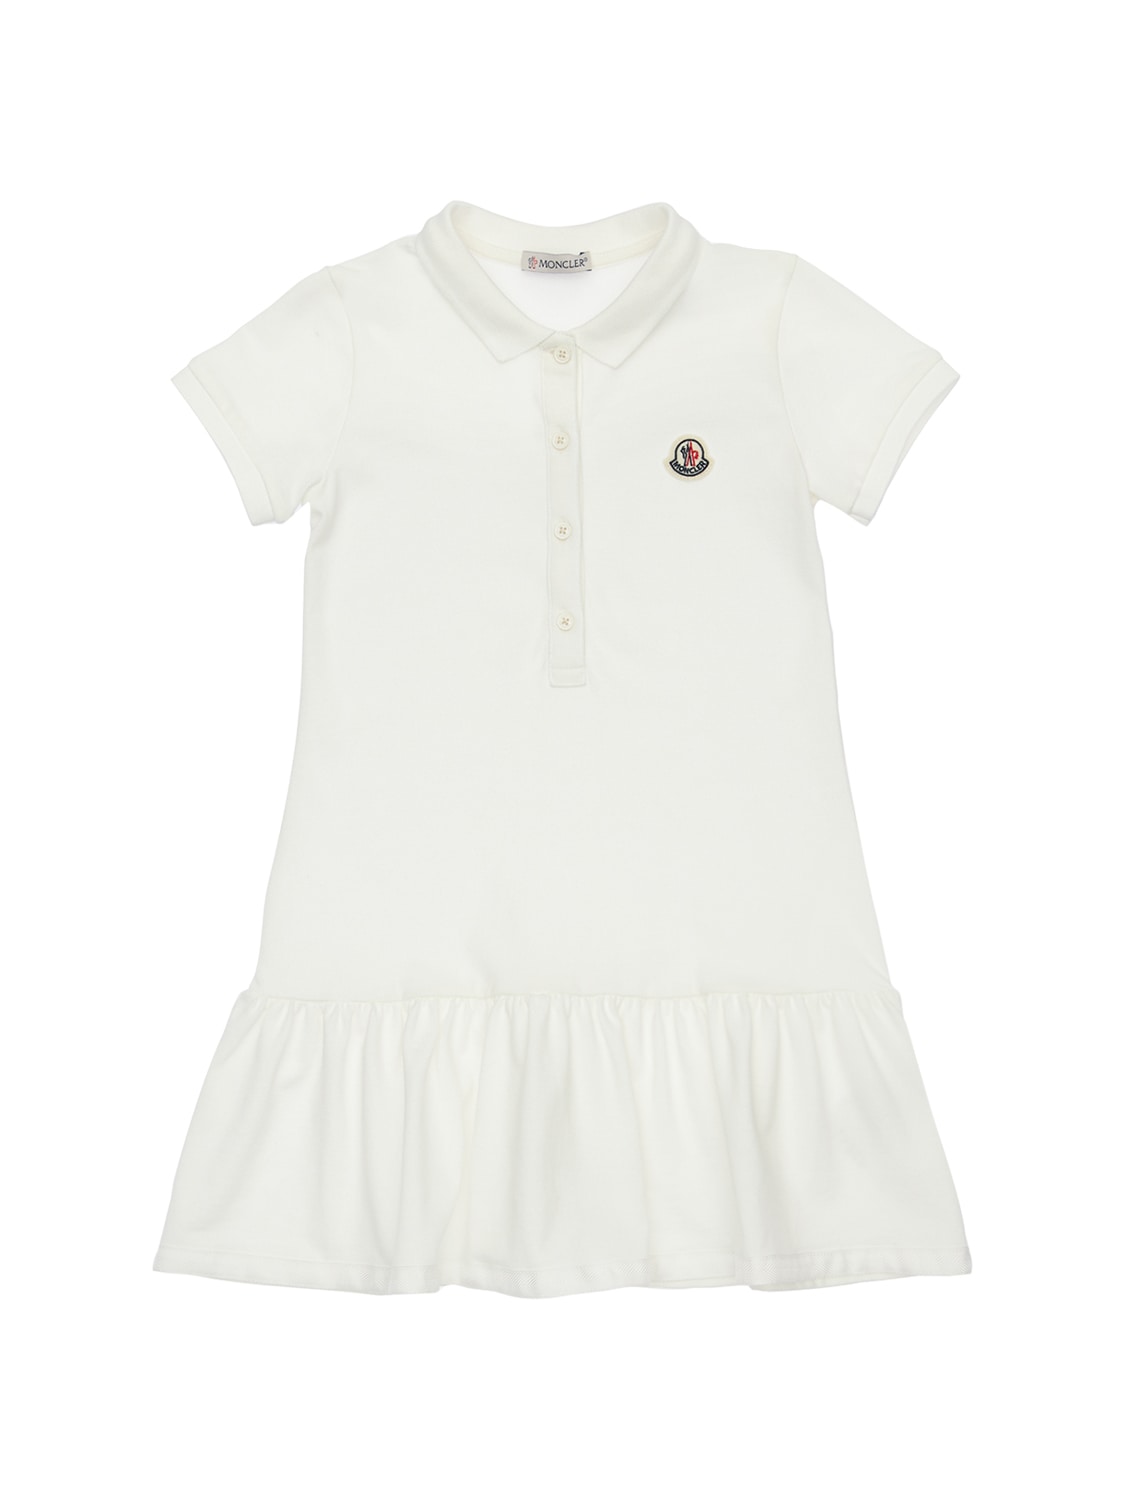 Moncler Kids' Cotton Polo Shirt Dress In White